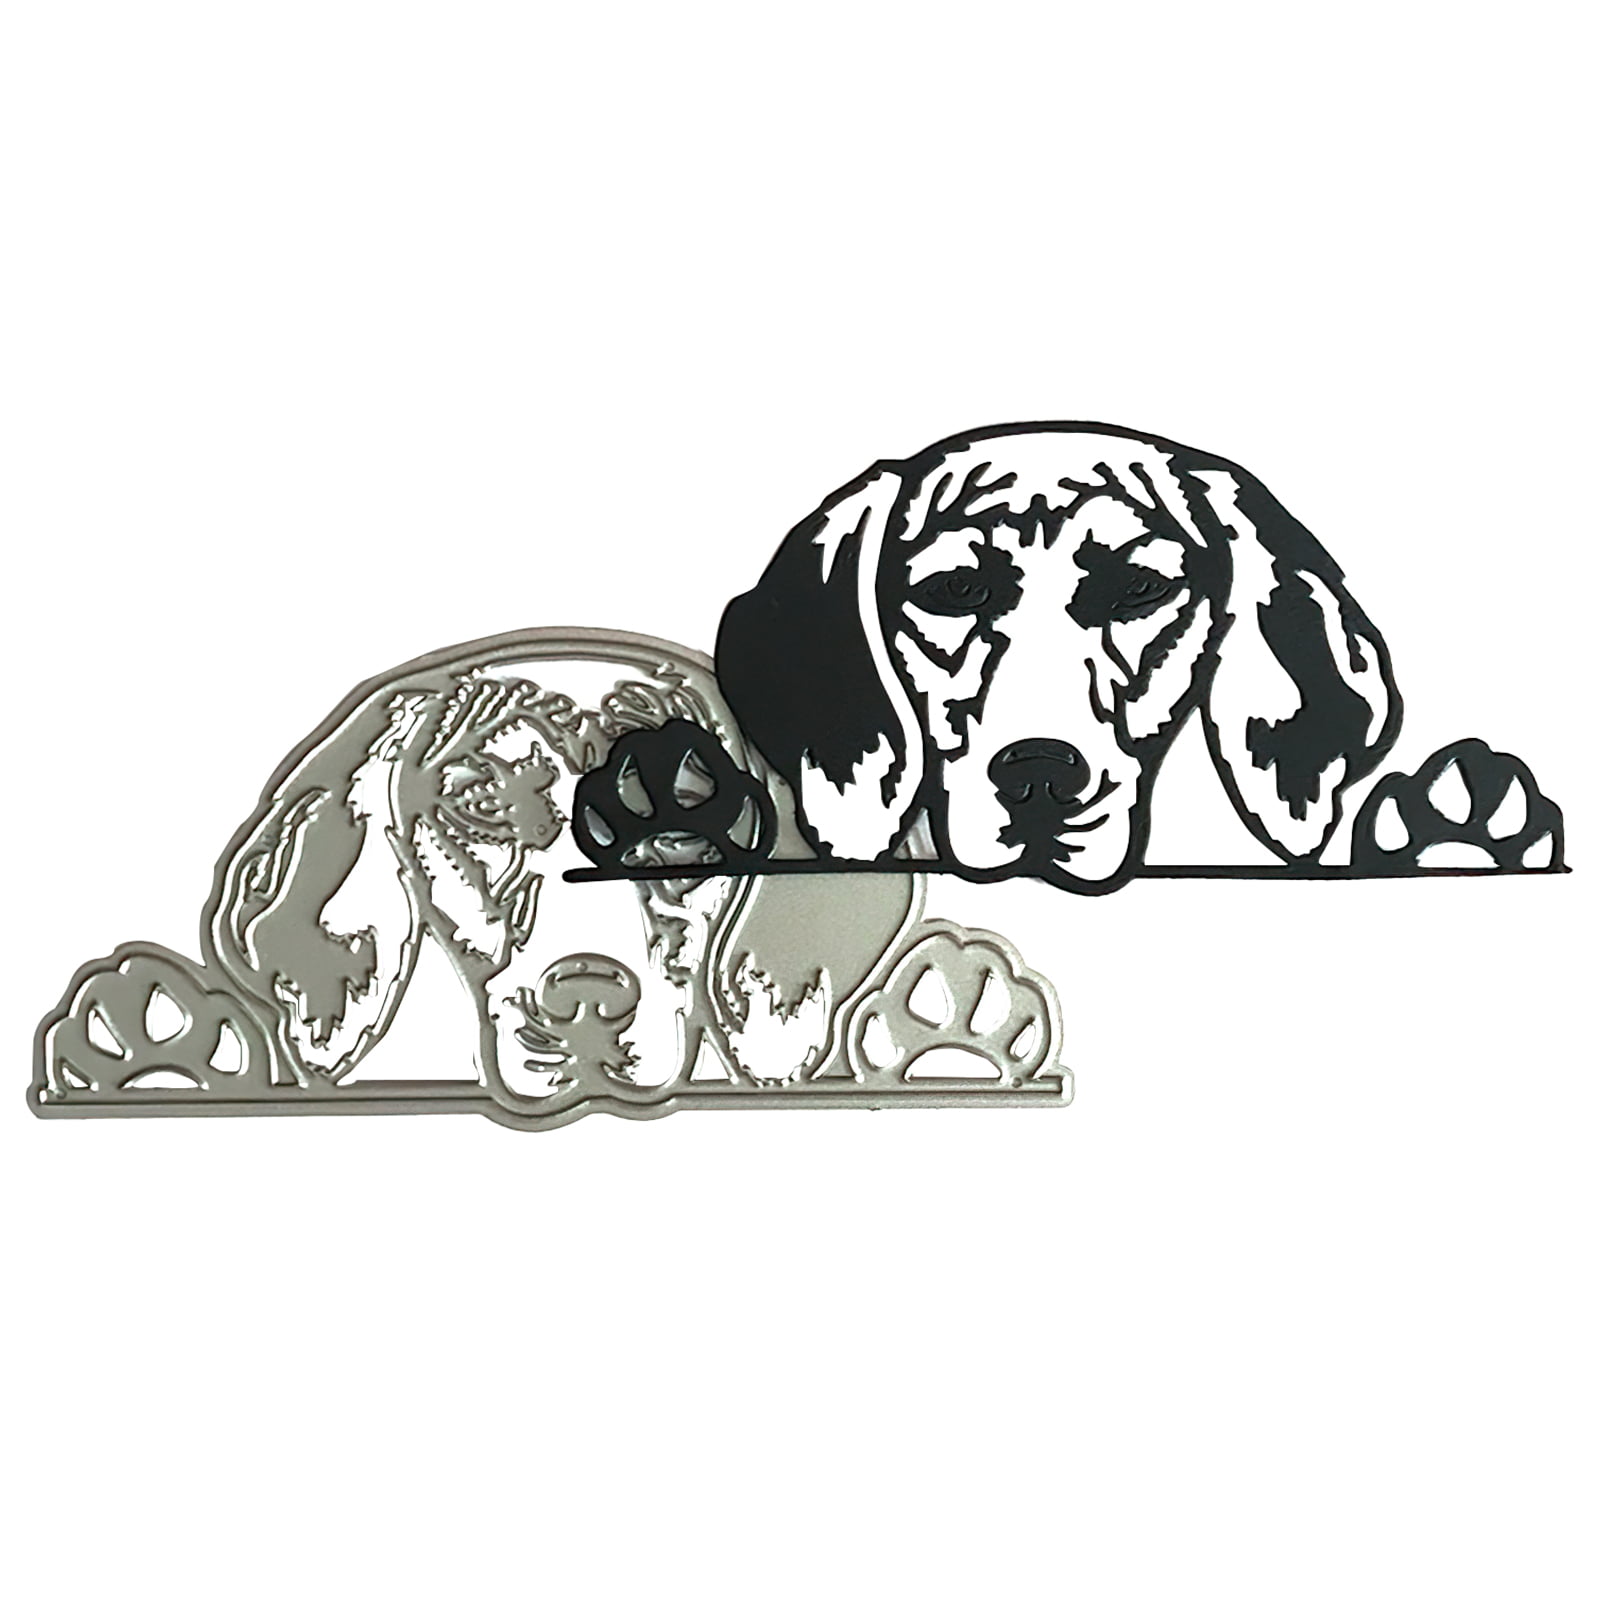 Basset Hound Dog Metal Cutting Dies Cut Die Mold Decoration Scrapbook Craft 